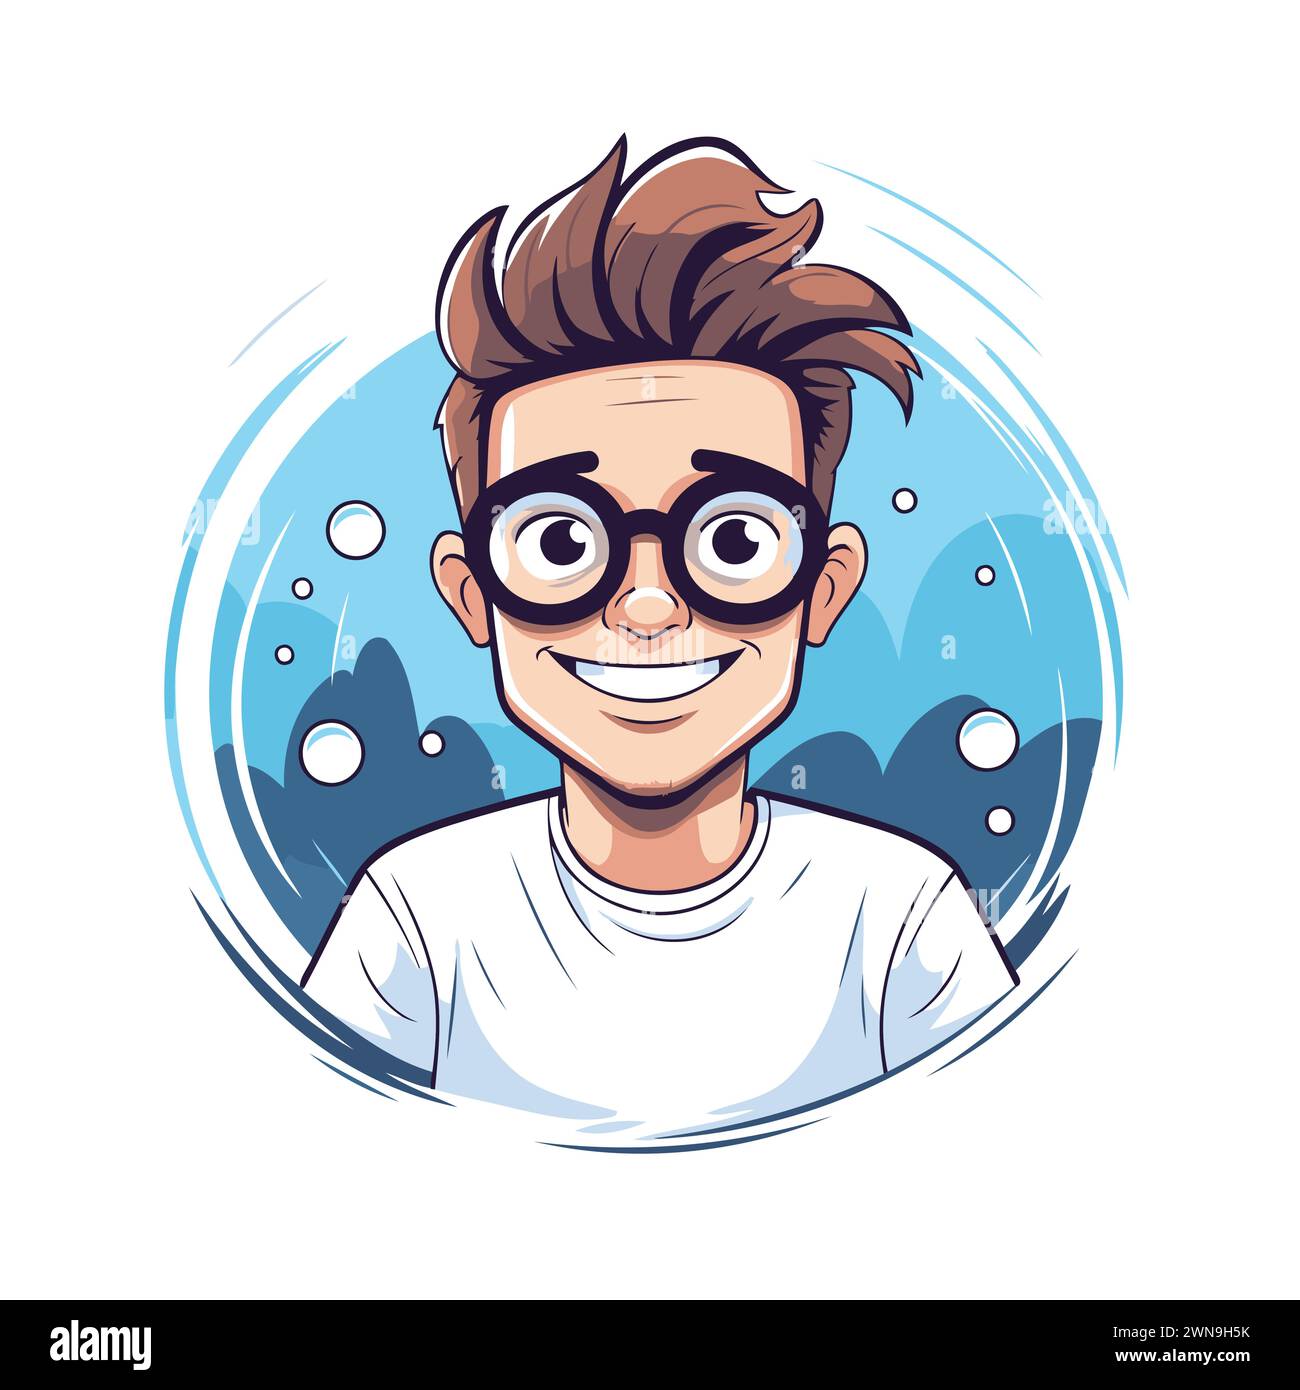 Vektorillustration eines jungen Mannes mit Brille und nassem Haar. Zeichentrickstil. Stock Vektor